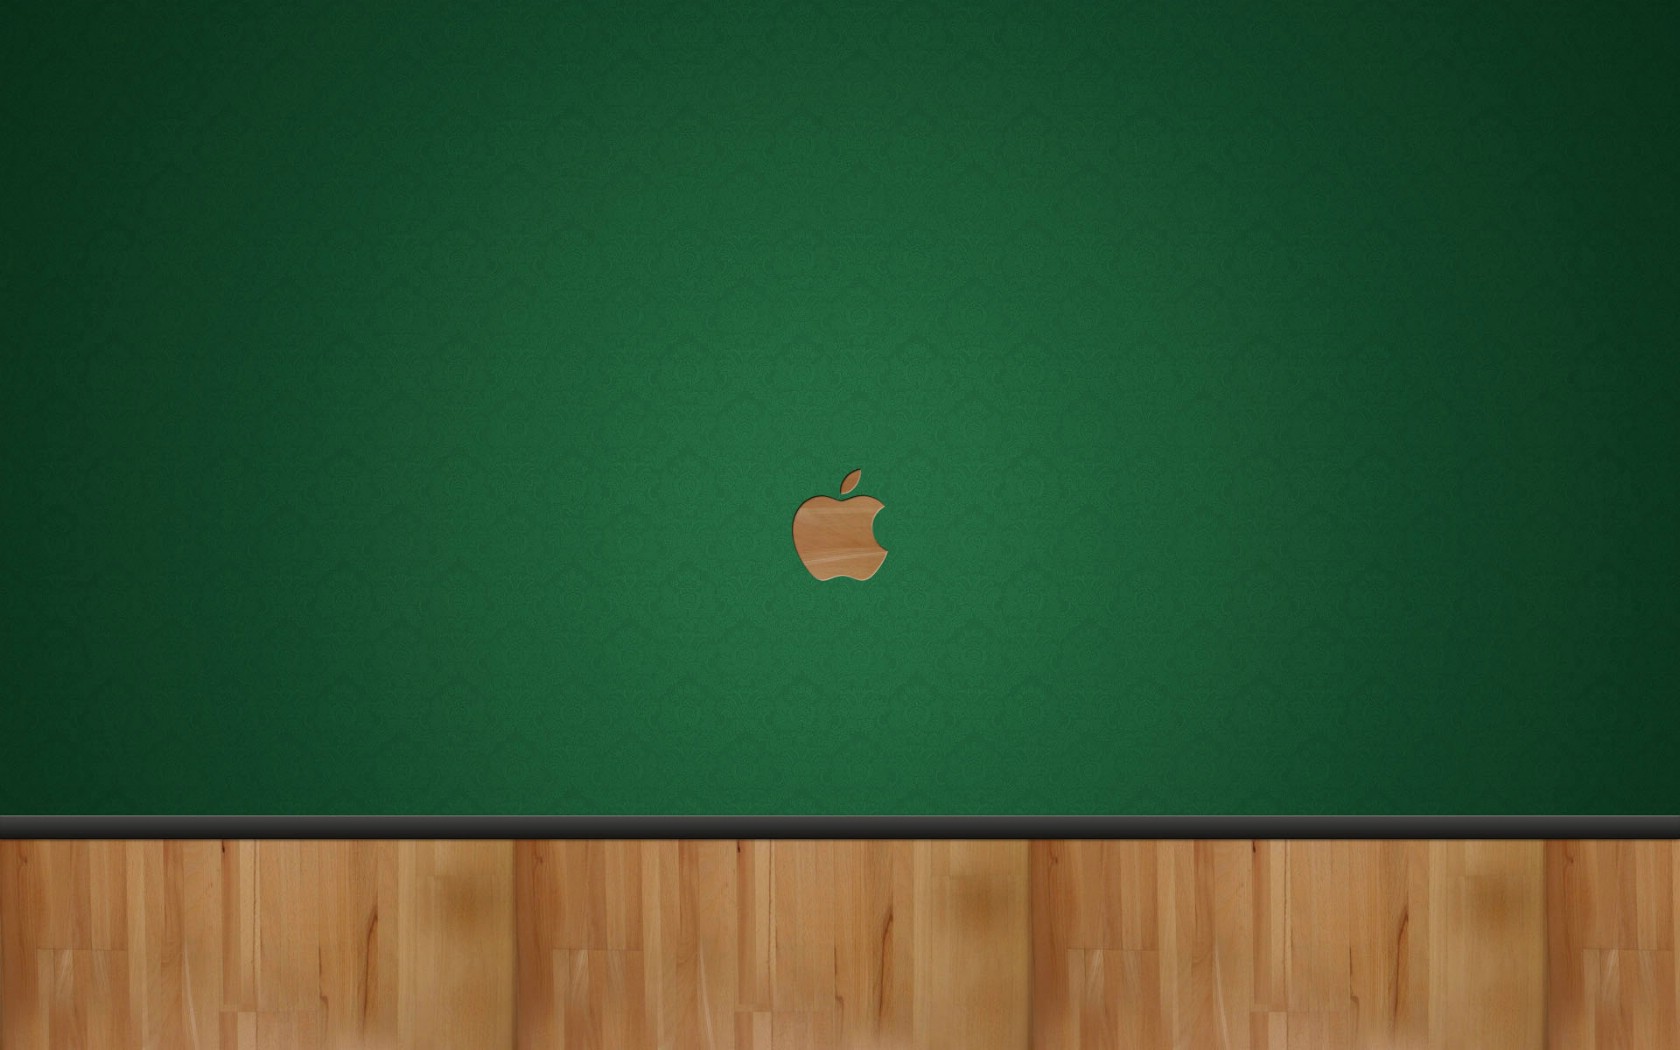 壁纸1680x1050Apple主题宽屏壁纸壁纸 Apple主题宽屏壁纸壁纸 Apple主题宽屏壁纸图片 Apple主题宽屏壁纸素材 创意壁纸 创意图库 创意图片素材桌面壁纸